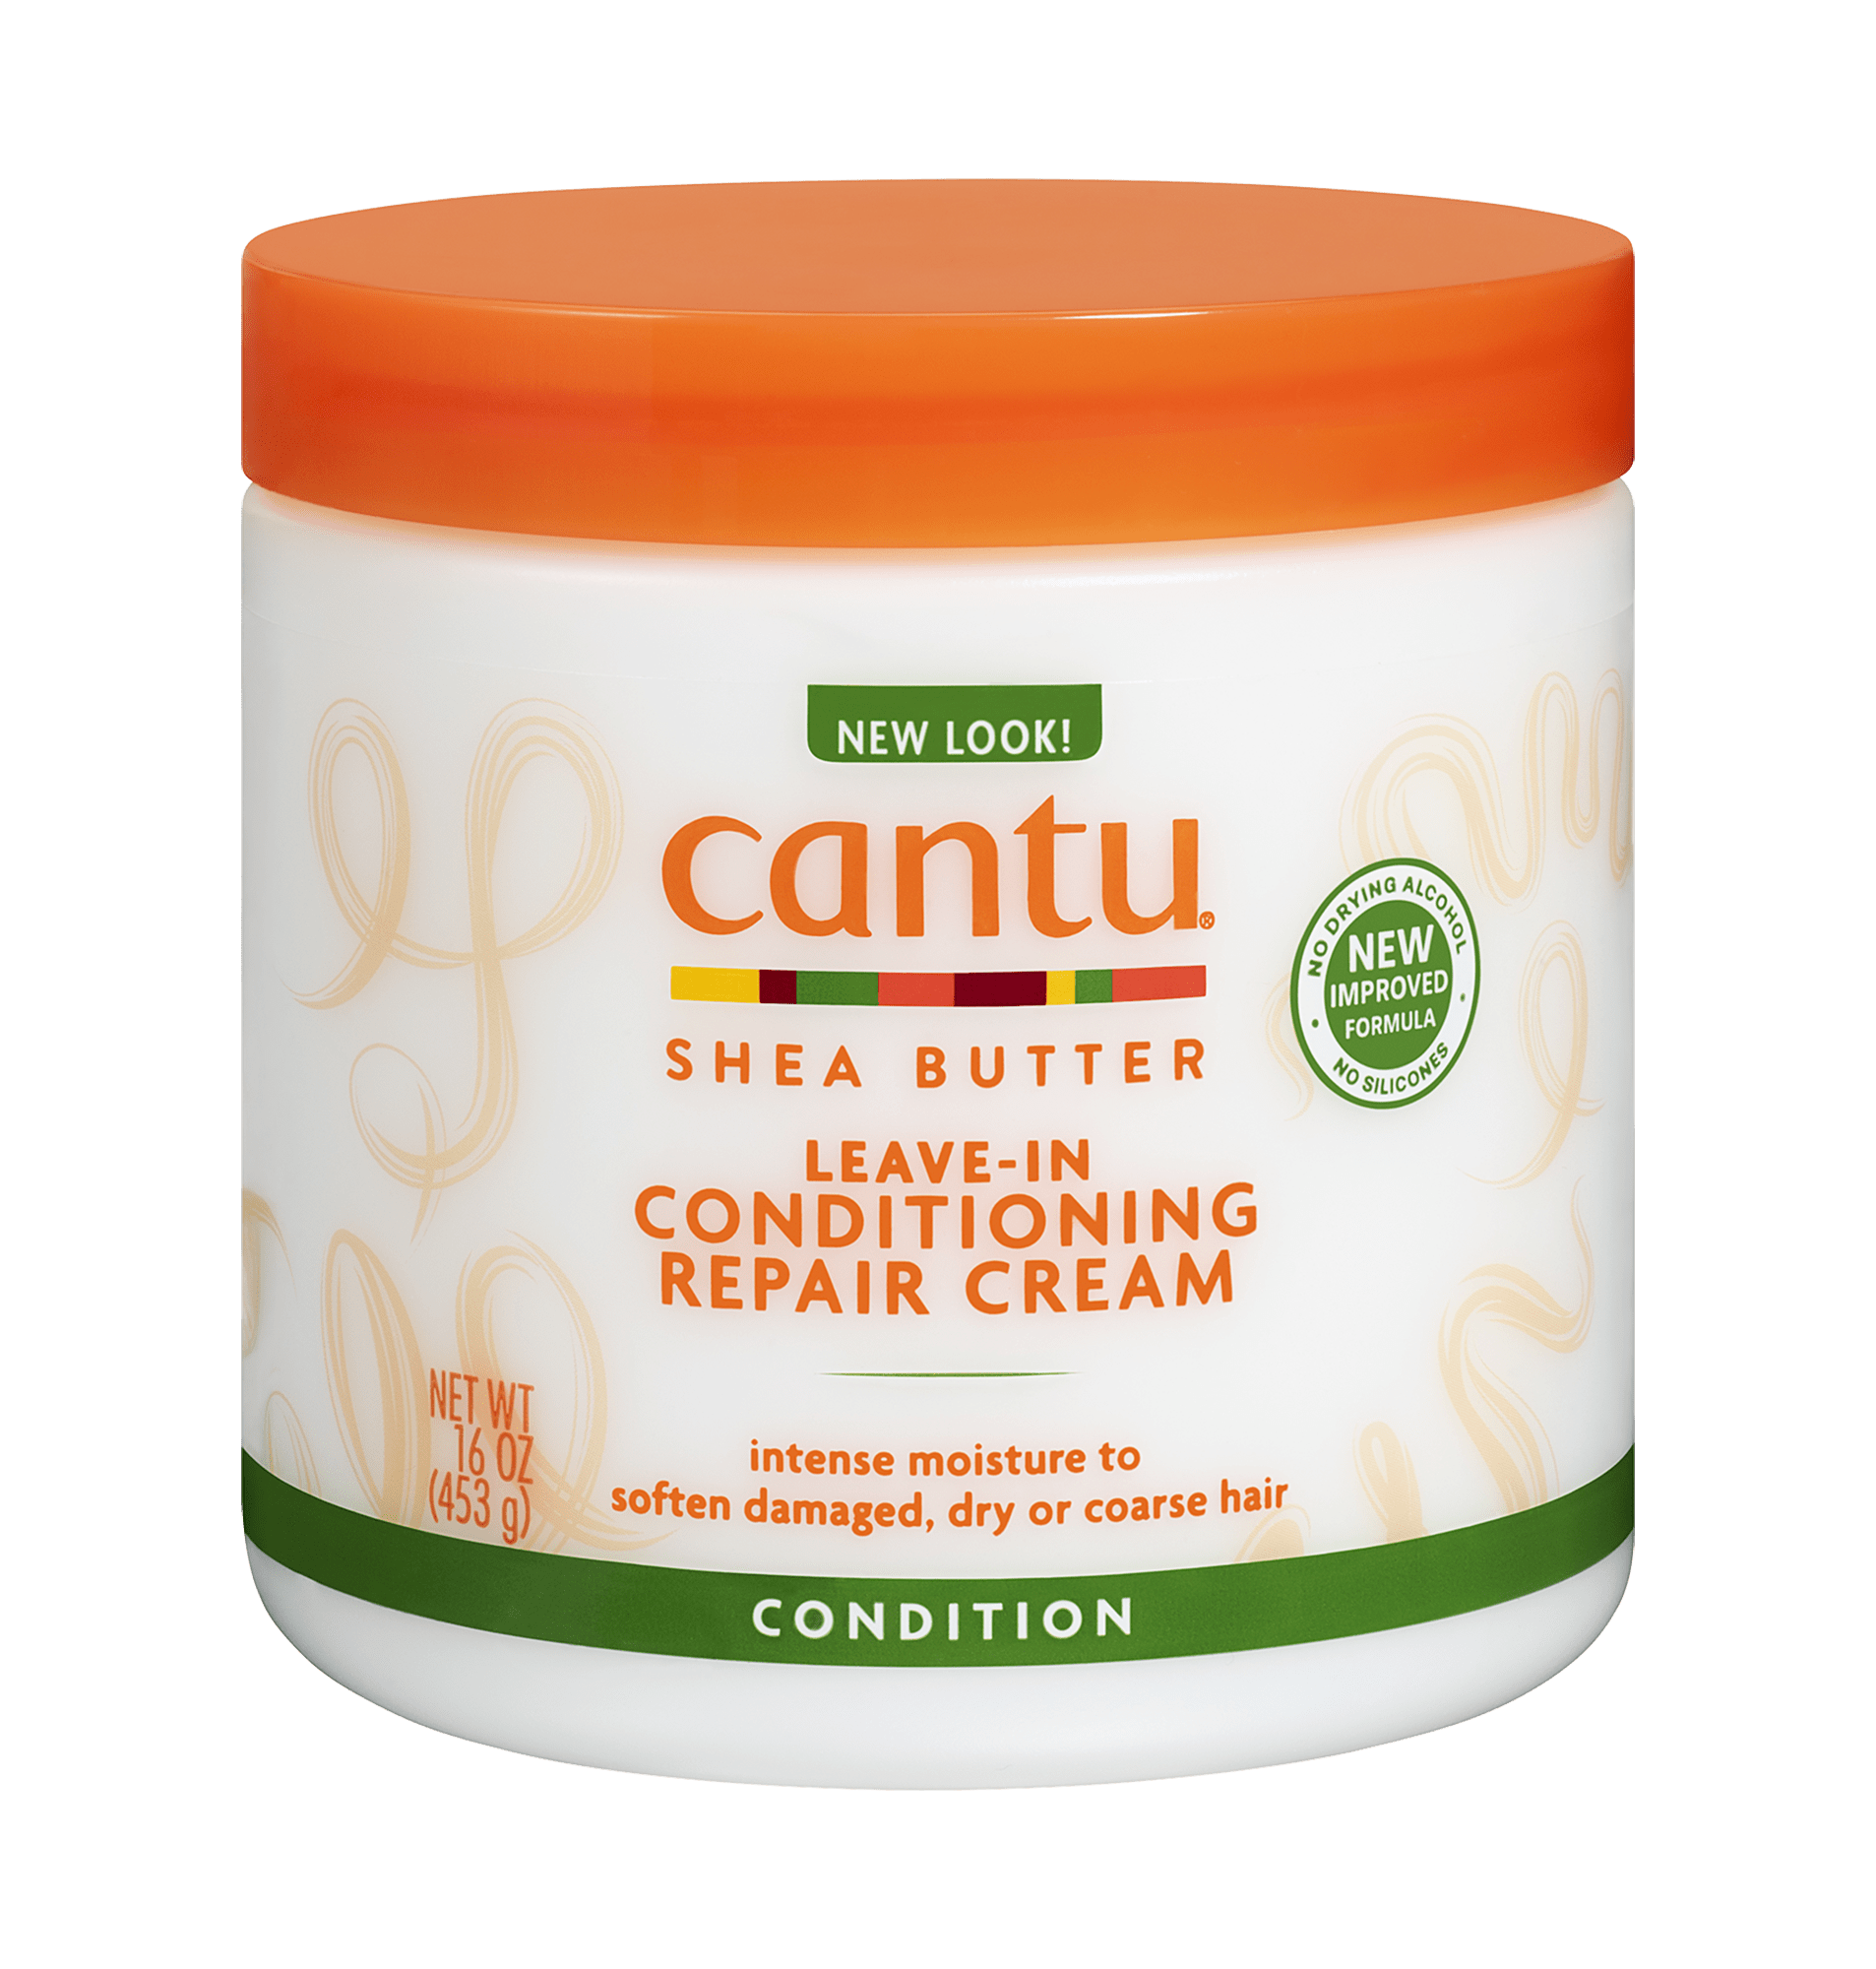 Cantu - Leave-In Conditioning Repair Cream 453g